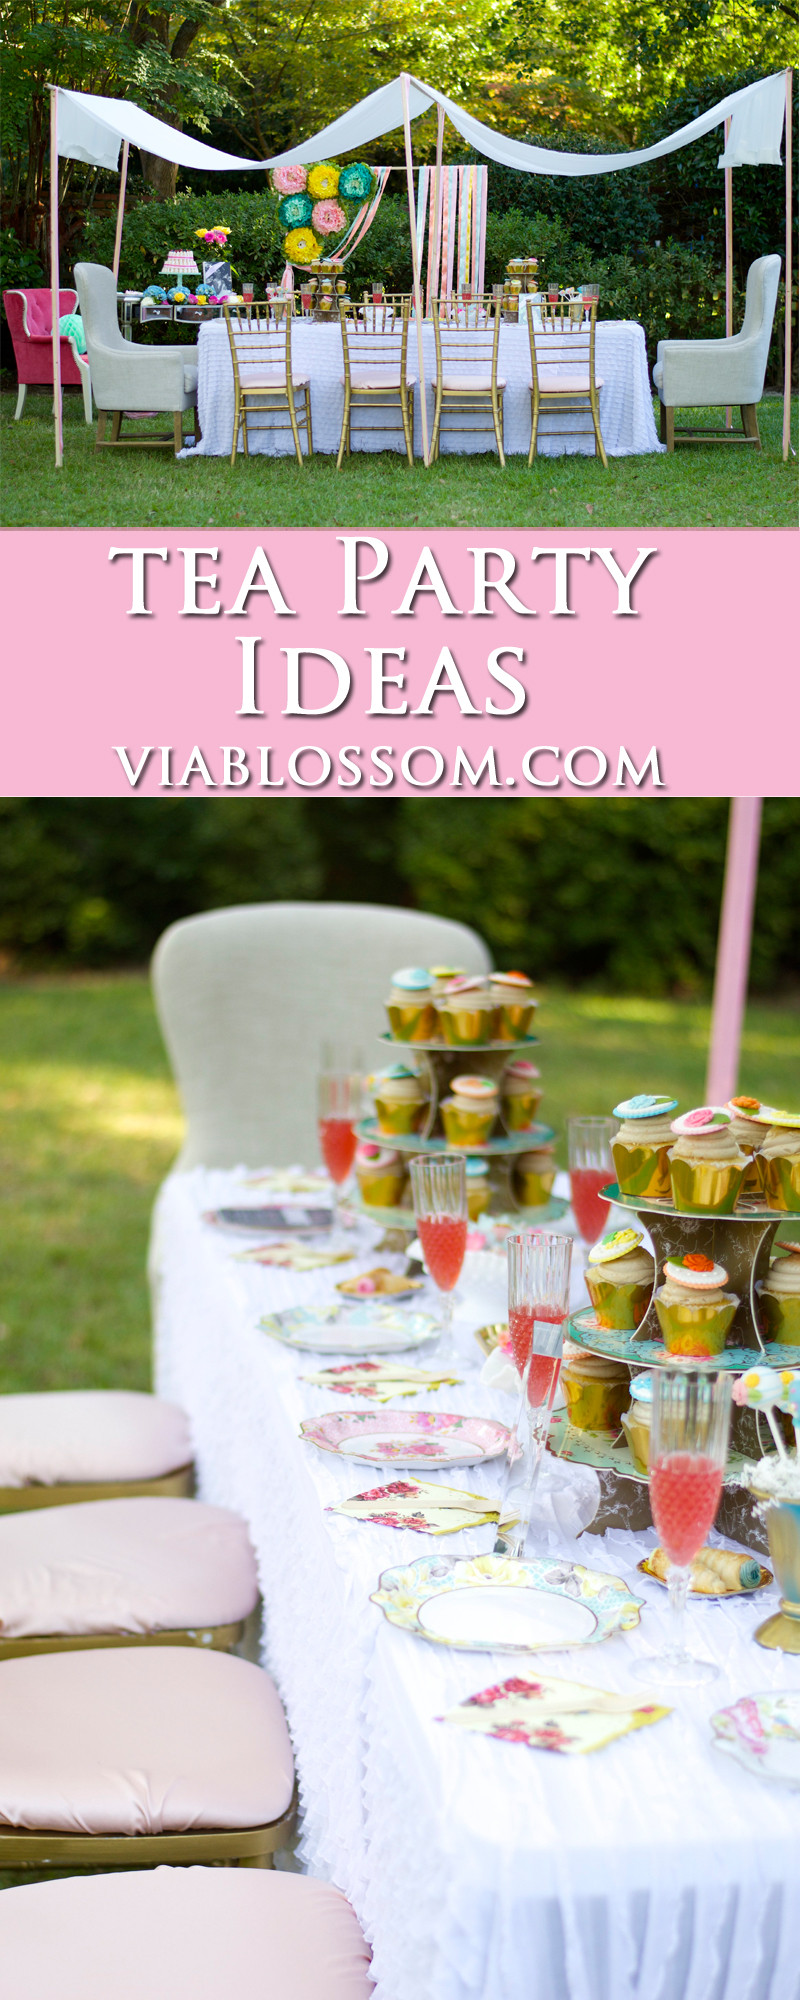 Garden Tea Party Ideas
 Baby Shower Garden Party Via Blossom